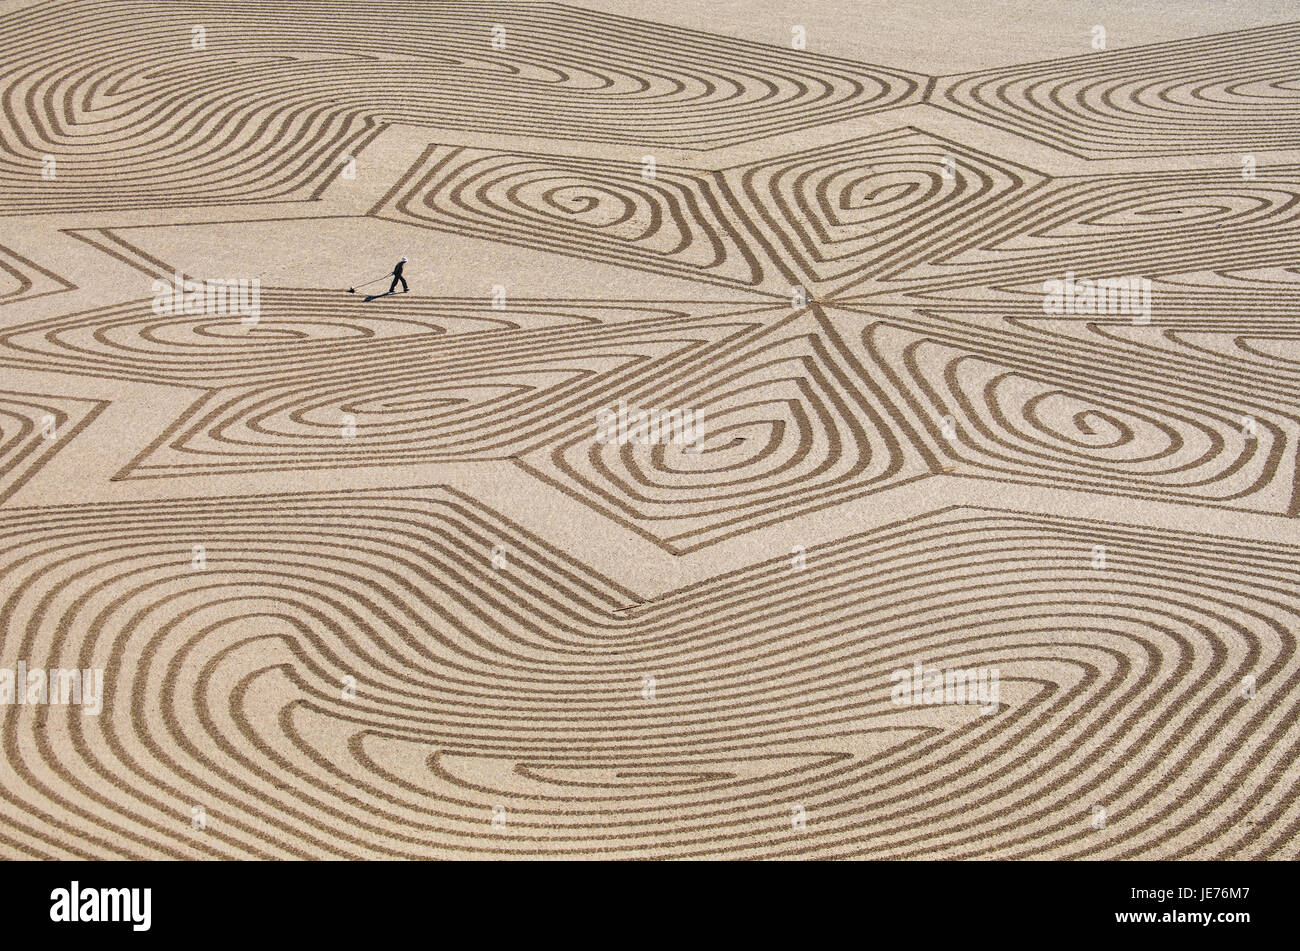 Sabbia artista Simon Beck terminando un enorme disegno geometrico in sabbia a bassa marea a Brean beach in Somerset REGNO UNITO Foto Stock